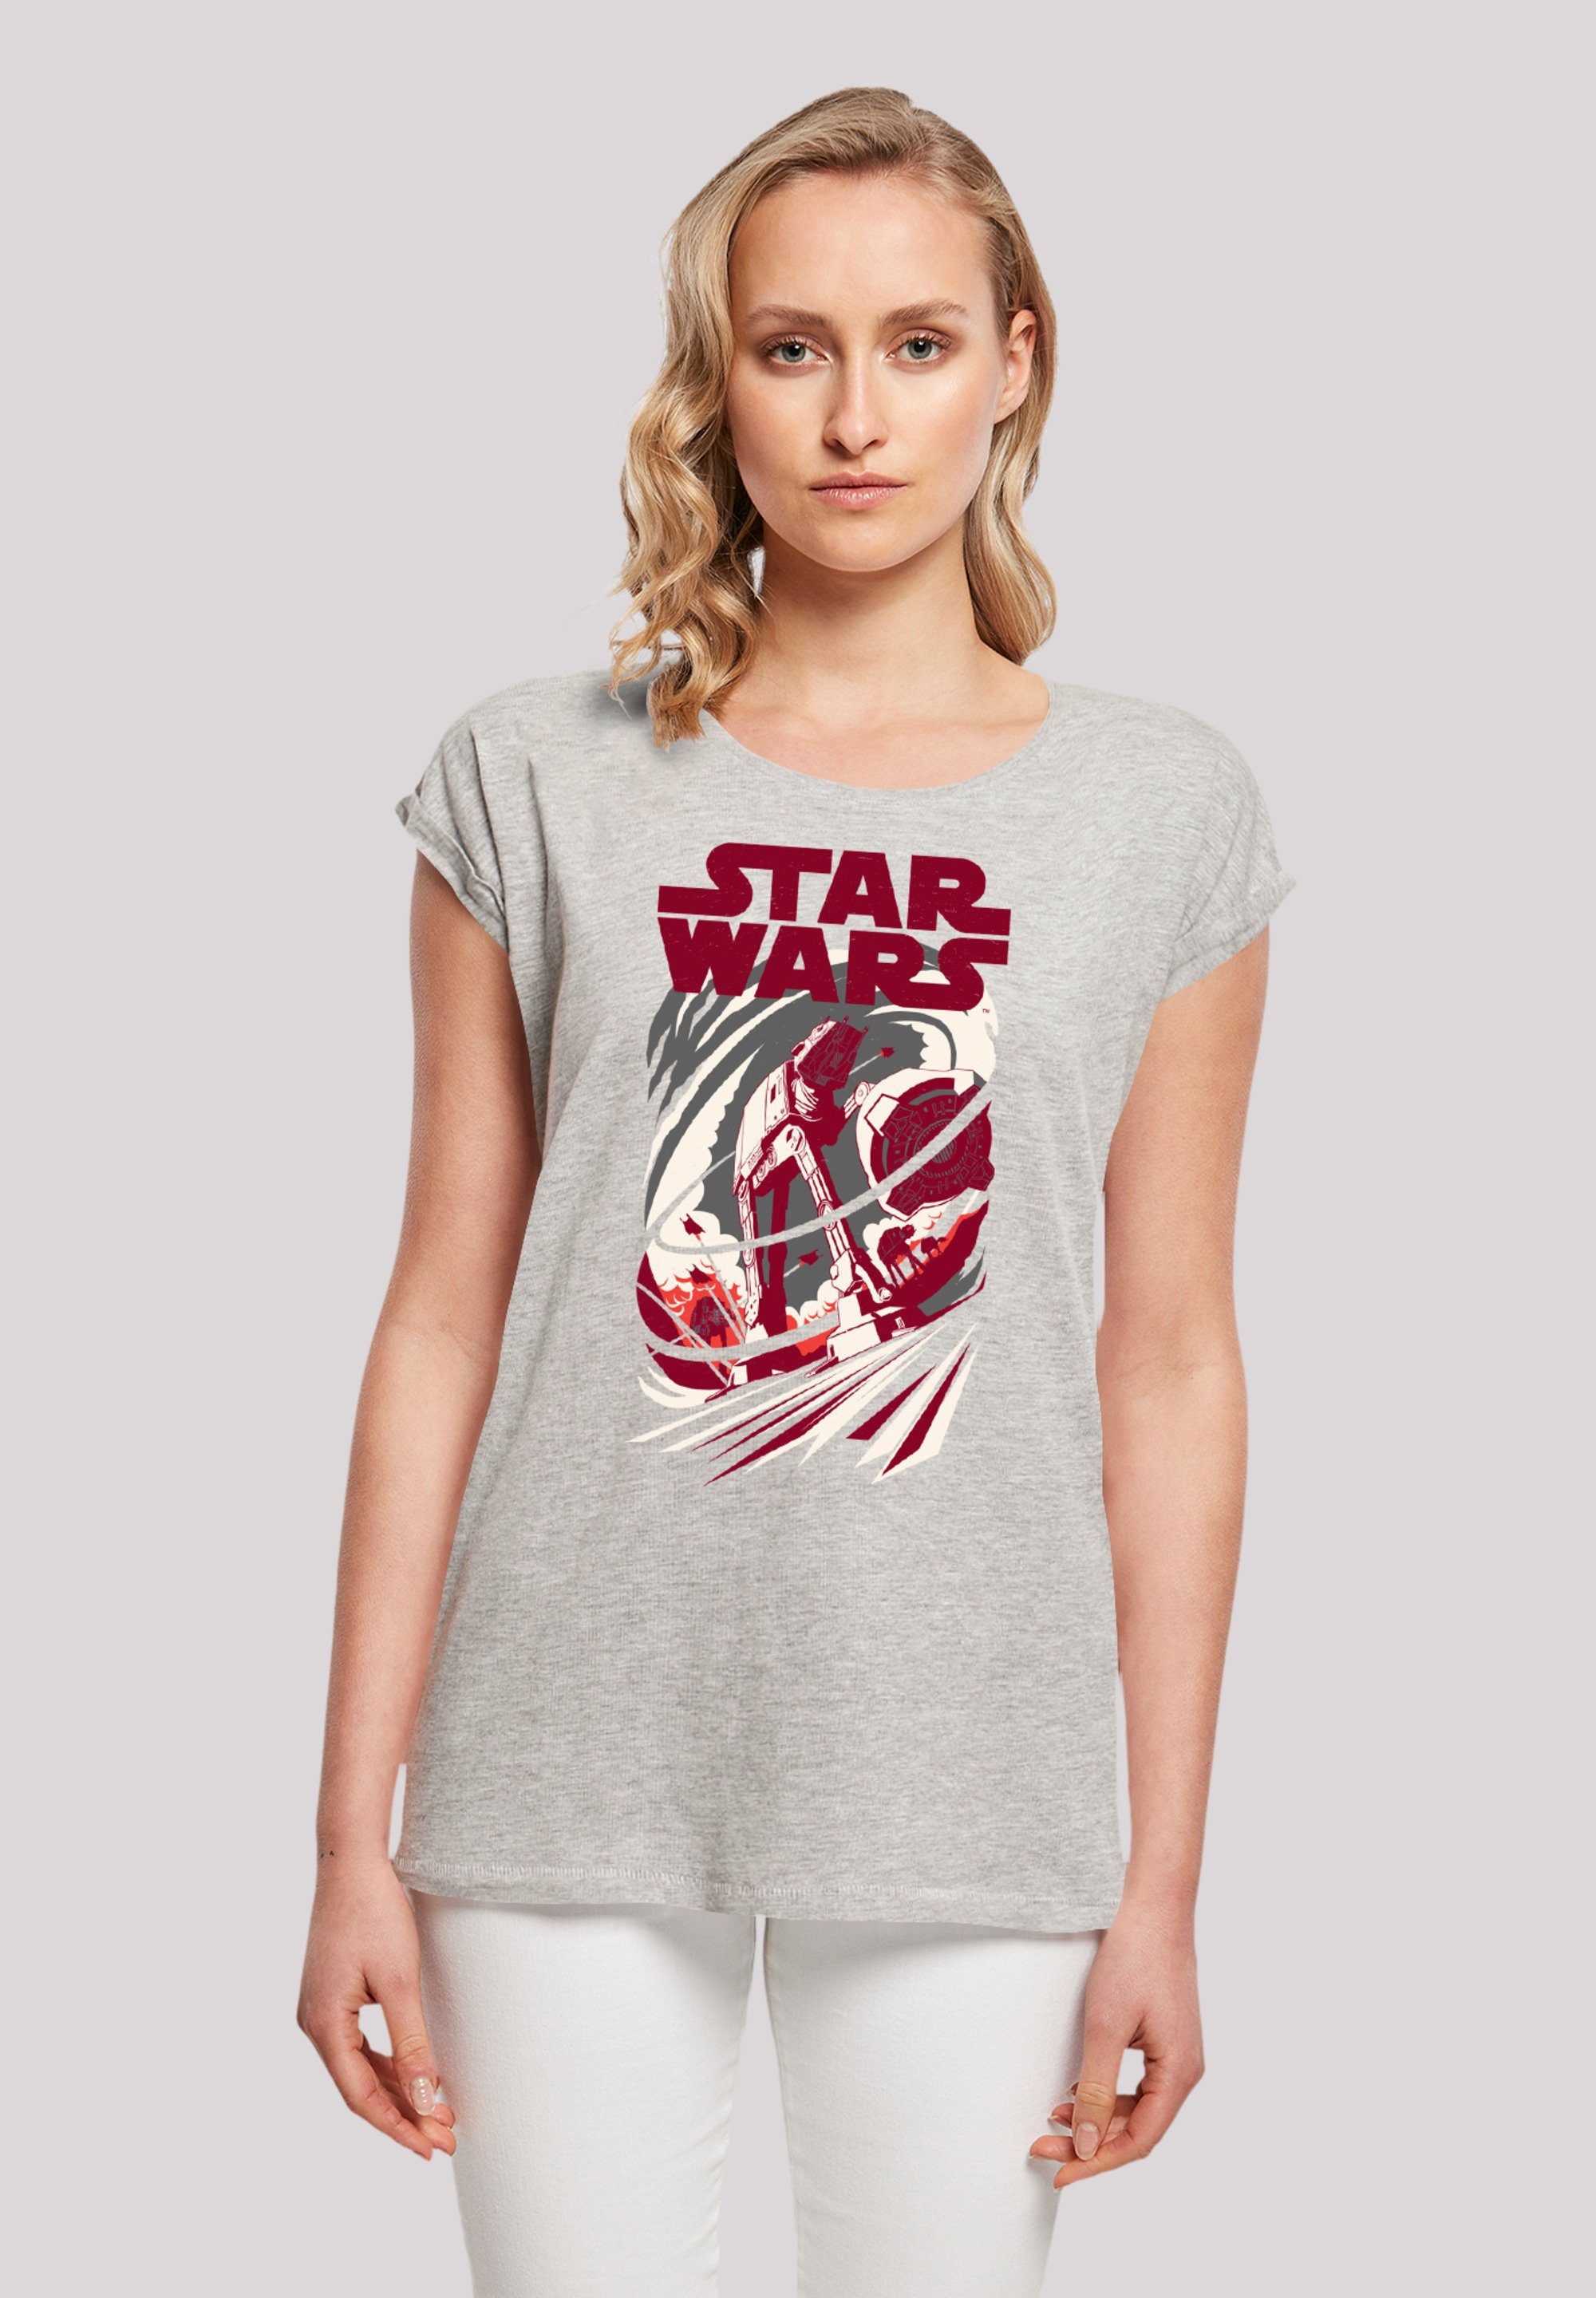 F4NT4STIC T-Shirt Star Wars Turmoil Premium Qualität heather grey